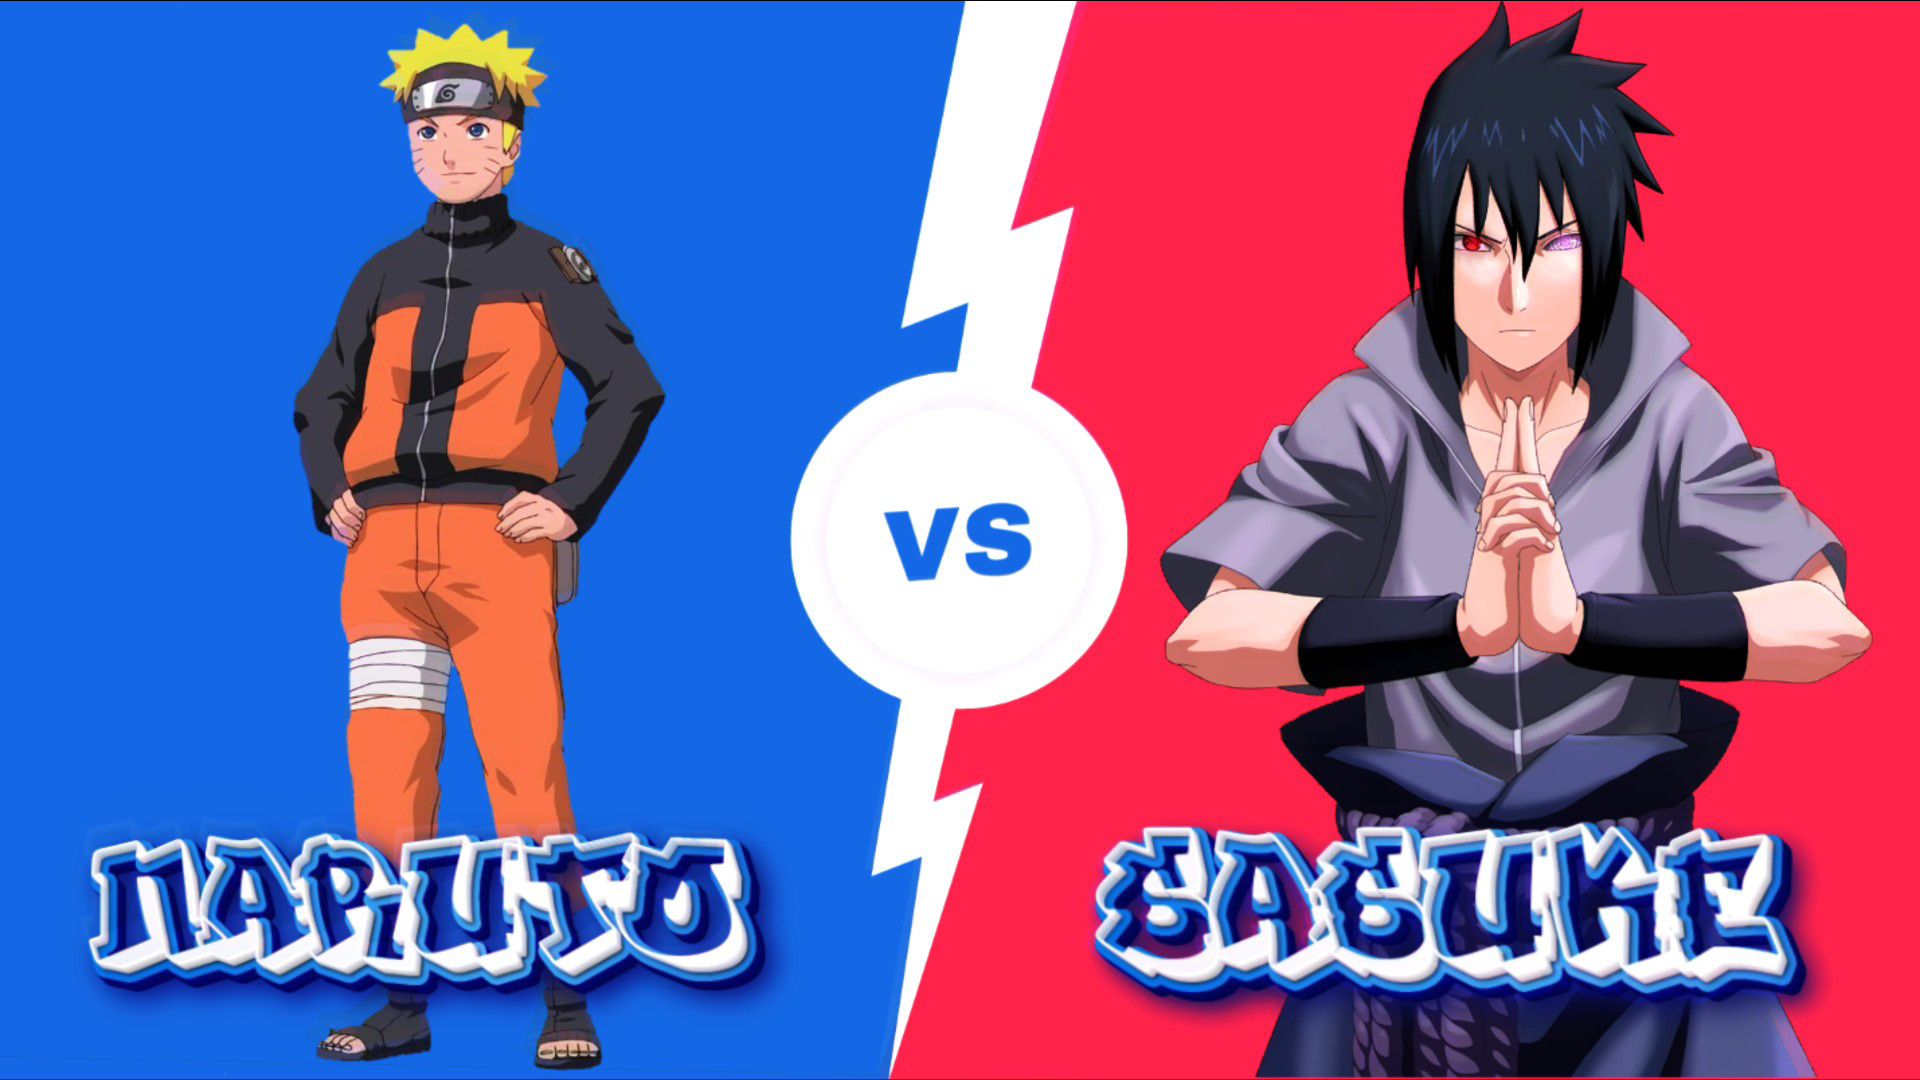 naruto vs sasuke VIDEO GAMES by sonicsimon2000 on DeviantArt